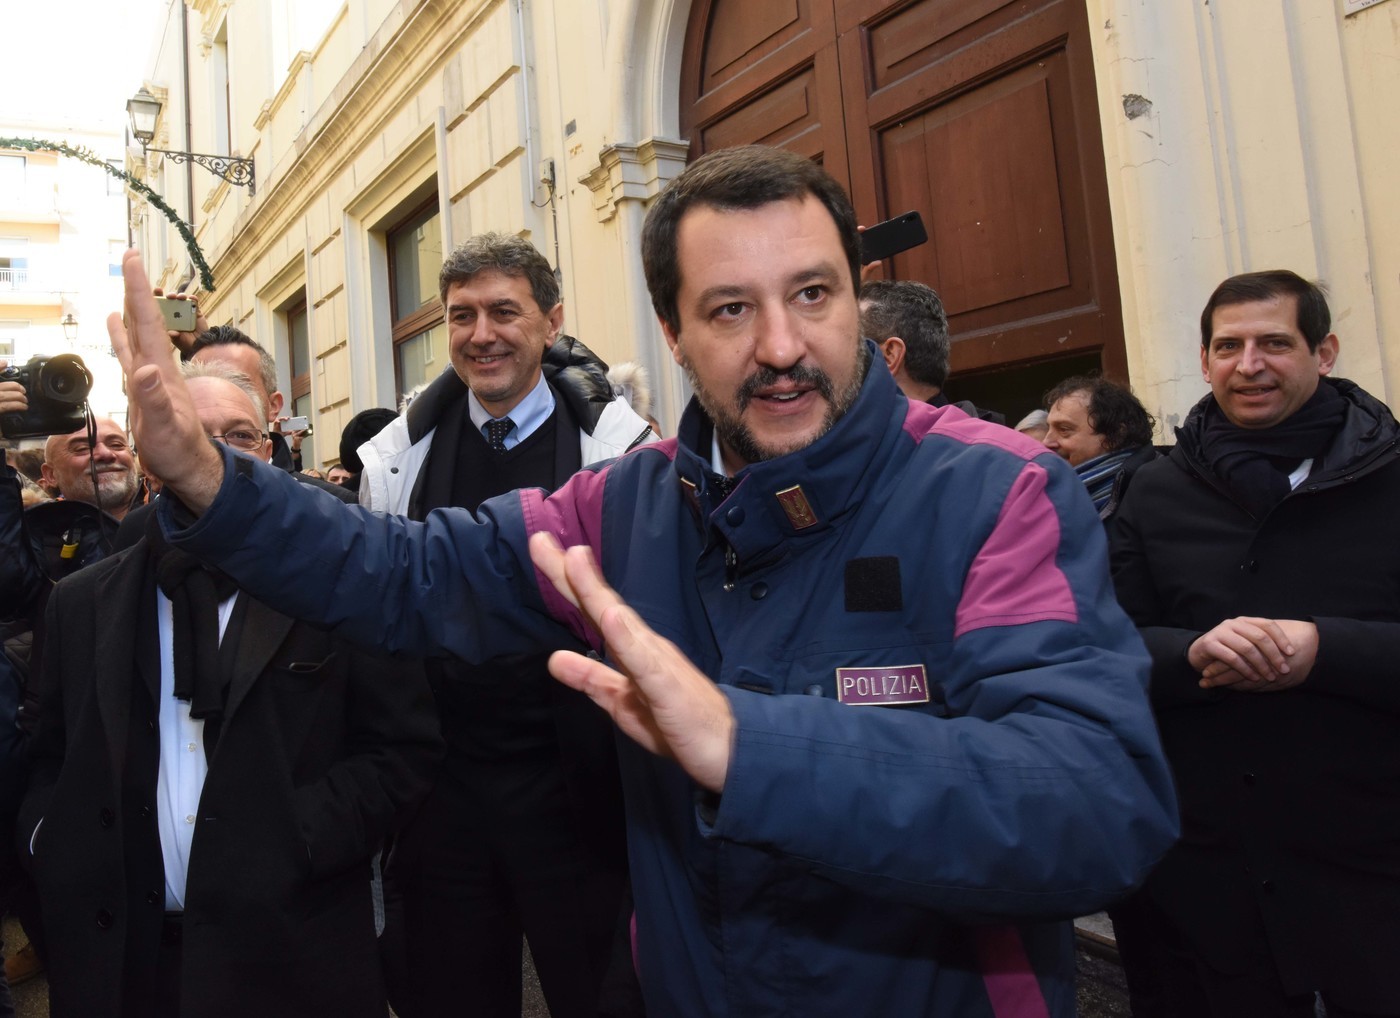 Saviano contro Salvini: “Gravissimo indossare divise”. La replica: “Ne sono orgoglioso”